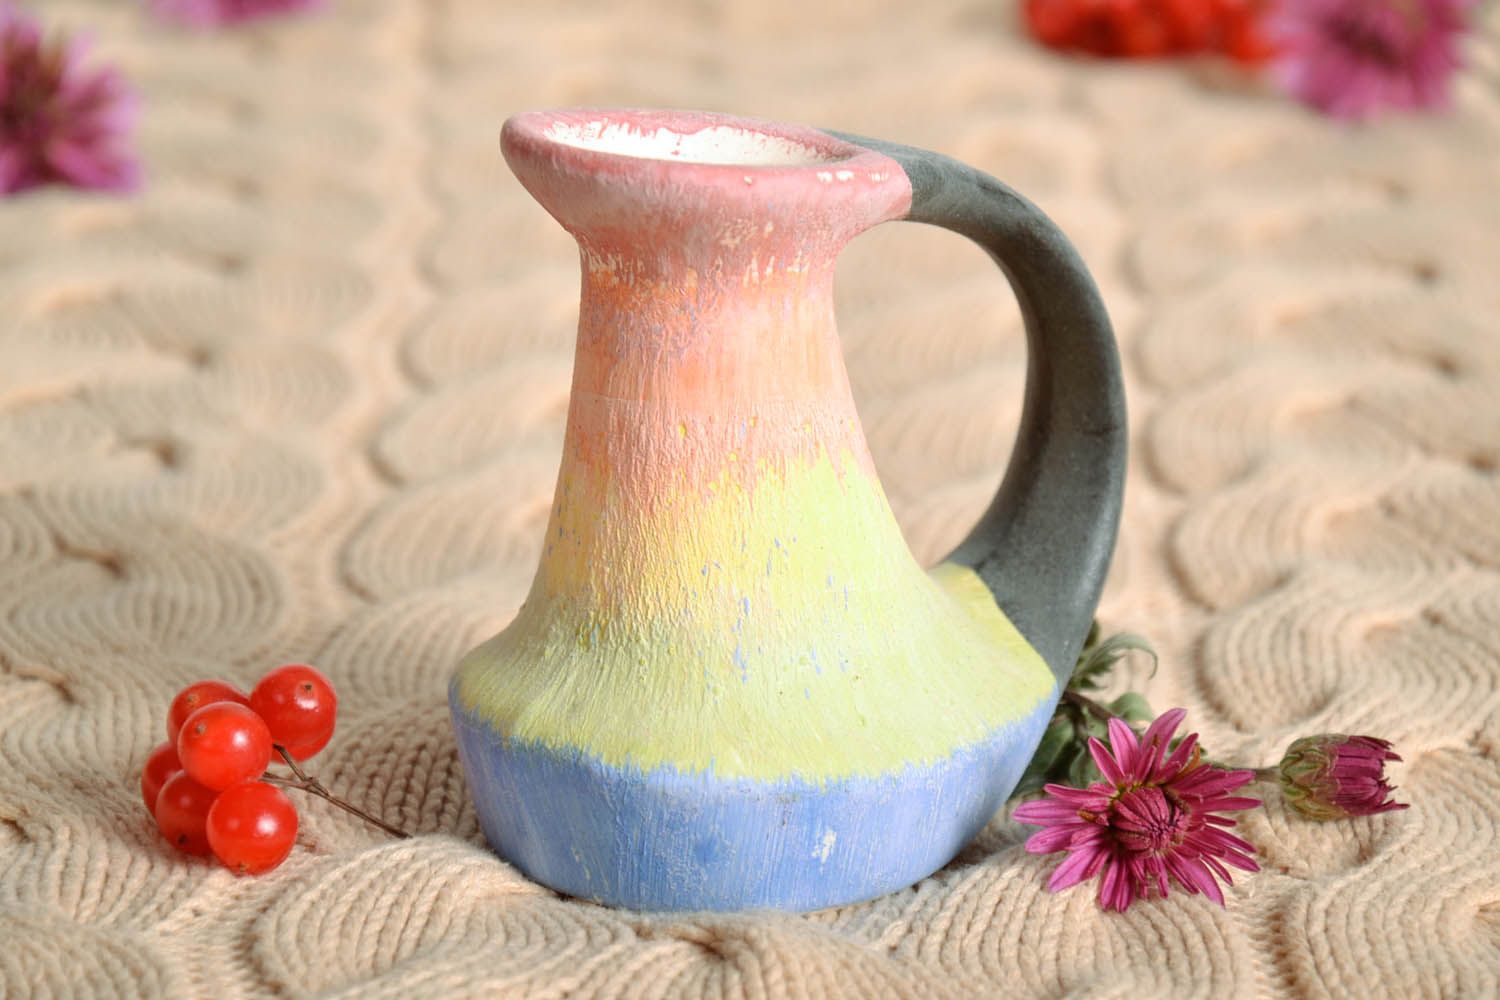 10 oz clay multicolored jug 0,32 lb photo 1